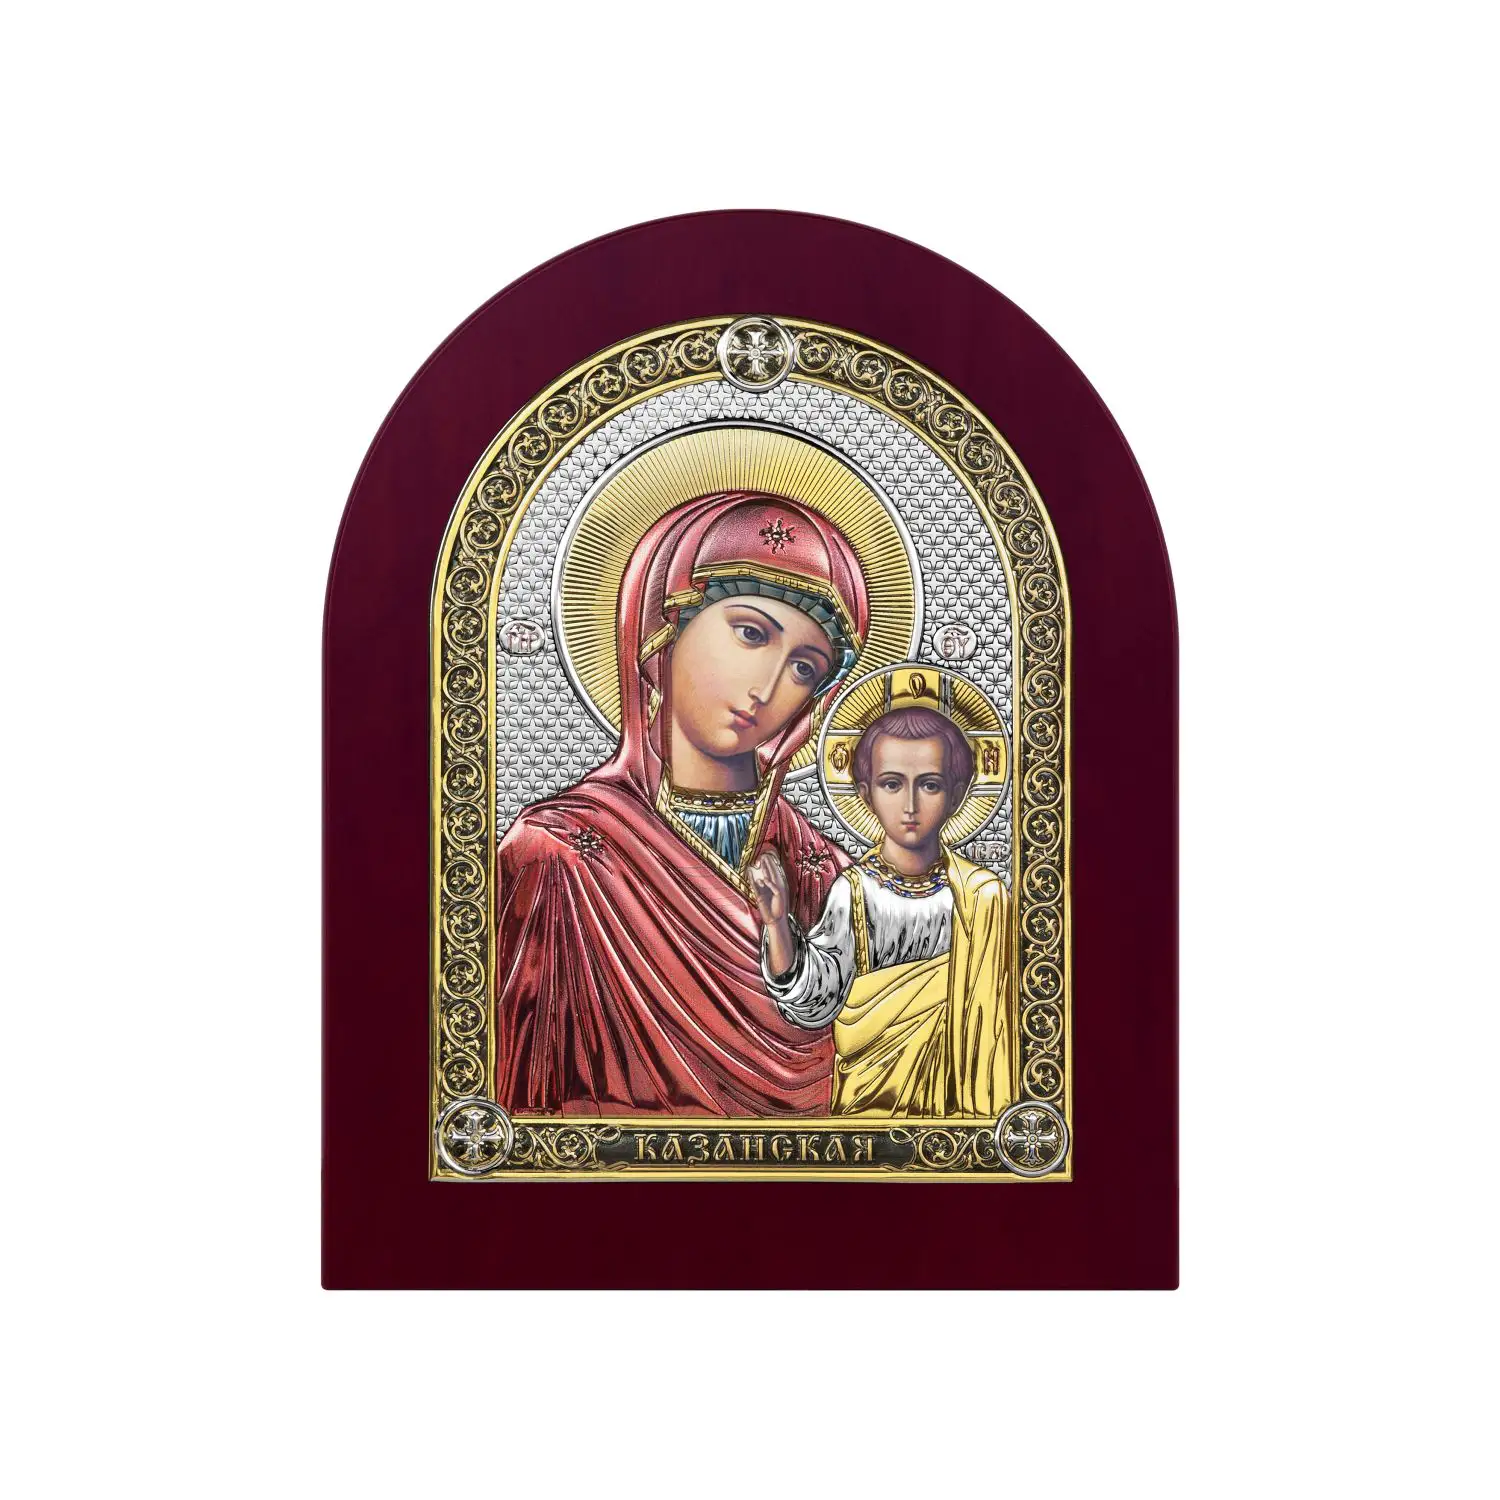 Икона Казанская Божья Матерь (10*12.5) икона божья матерь казанская 23 х 27 см